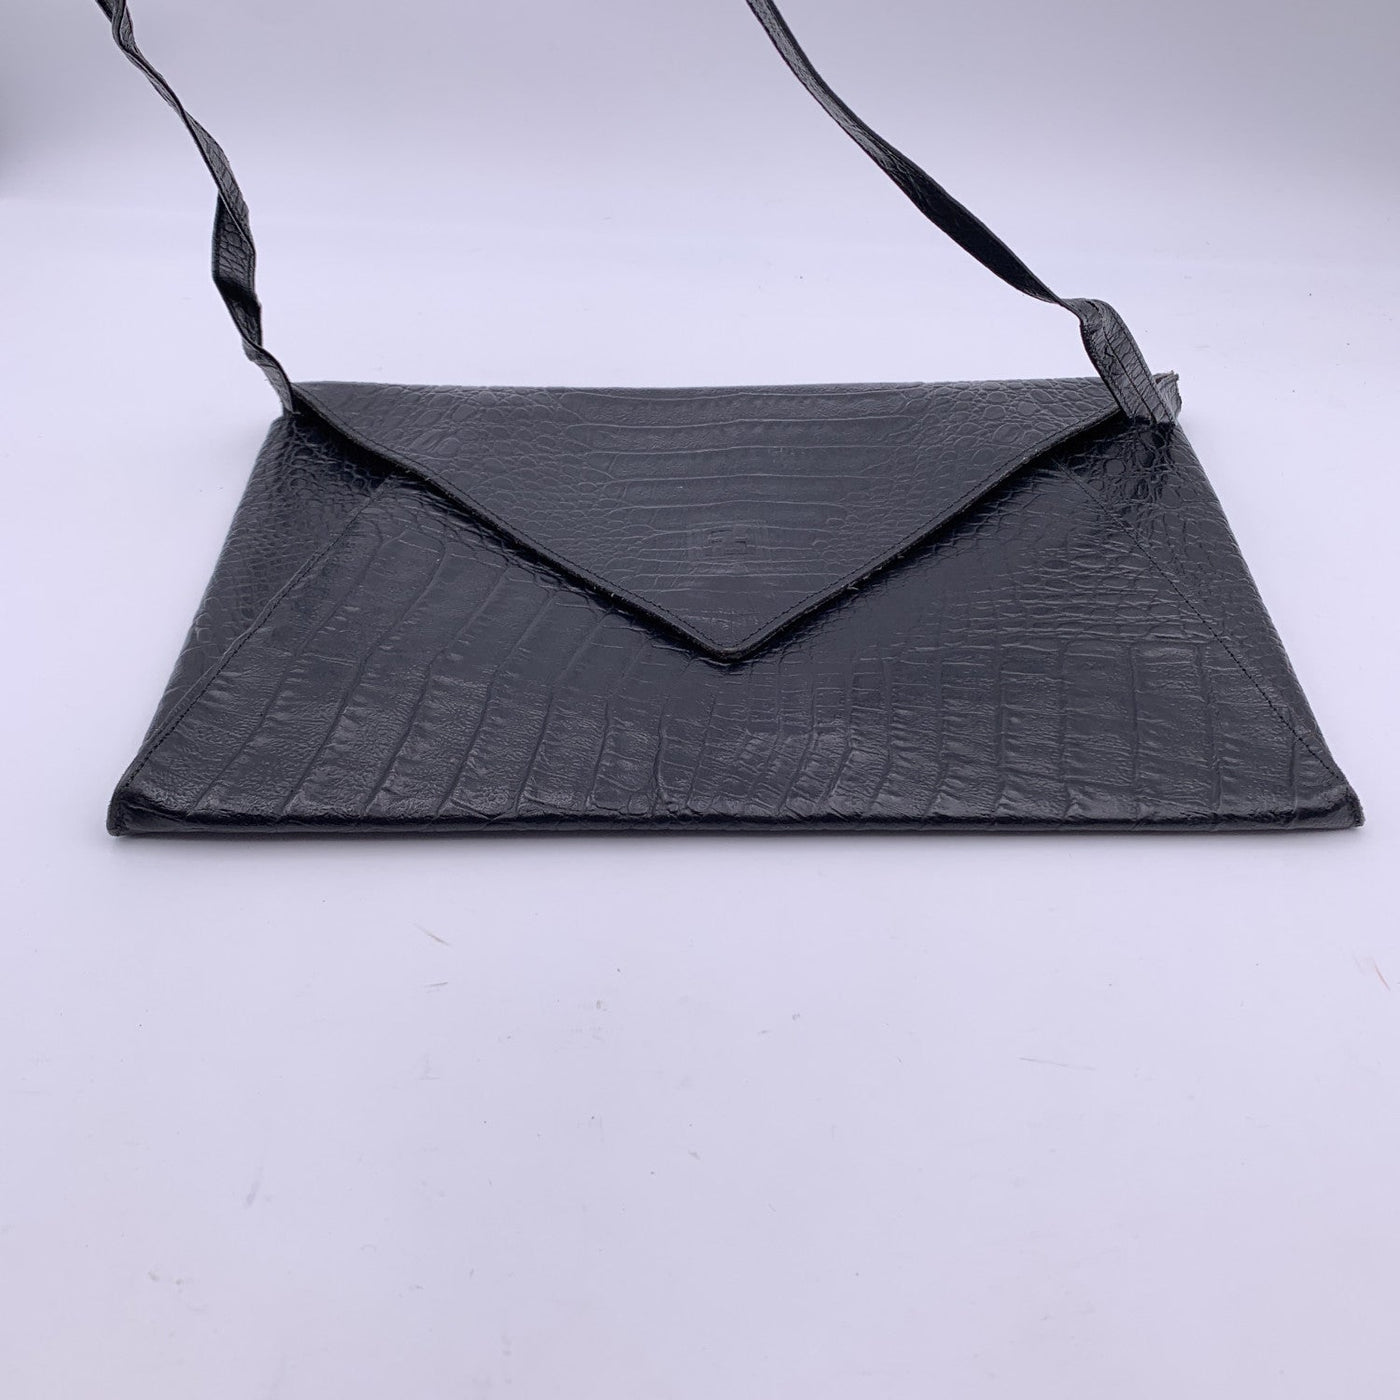 Fendi Vintage Black Embossed Portfolio Envelope Clutch Bag with Strap